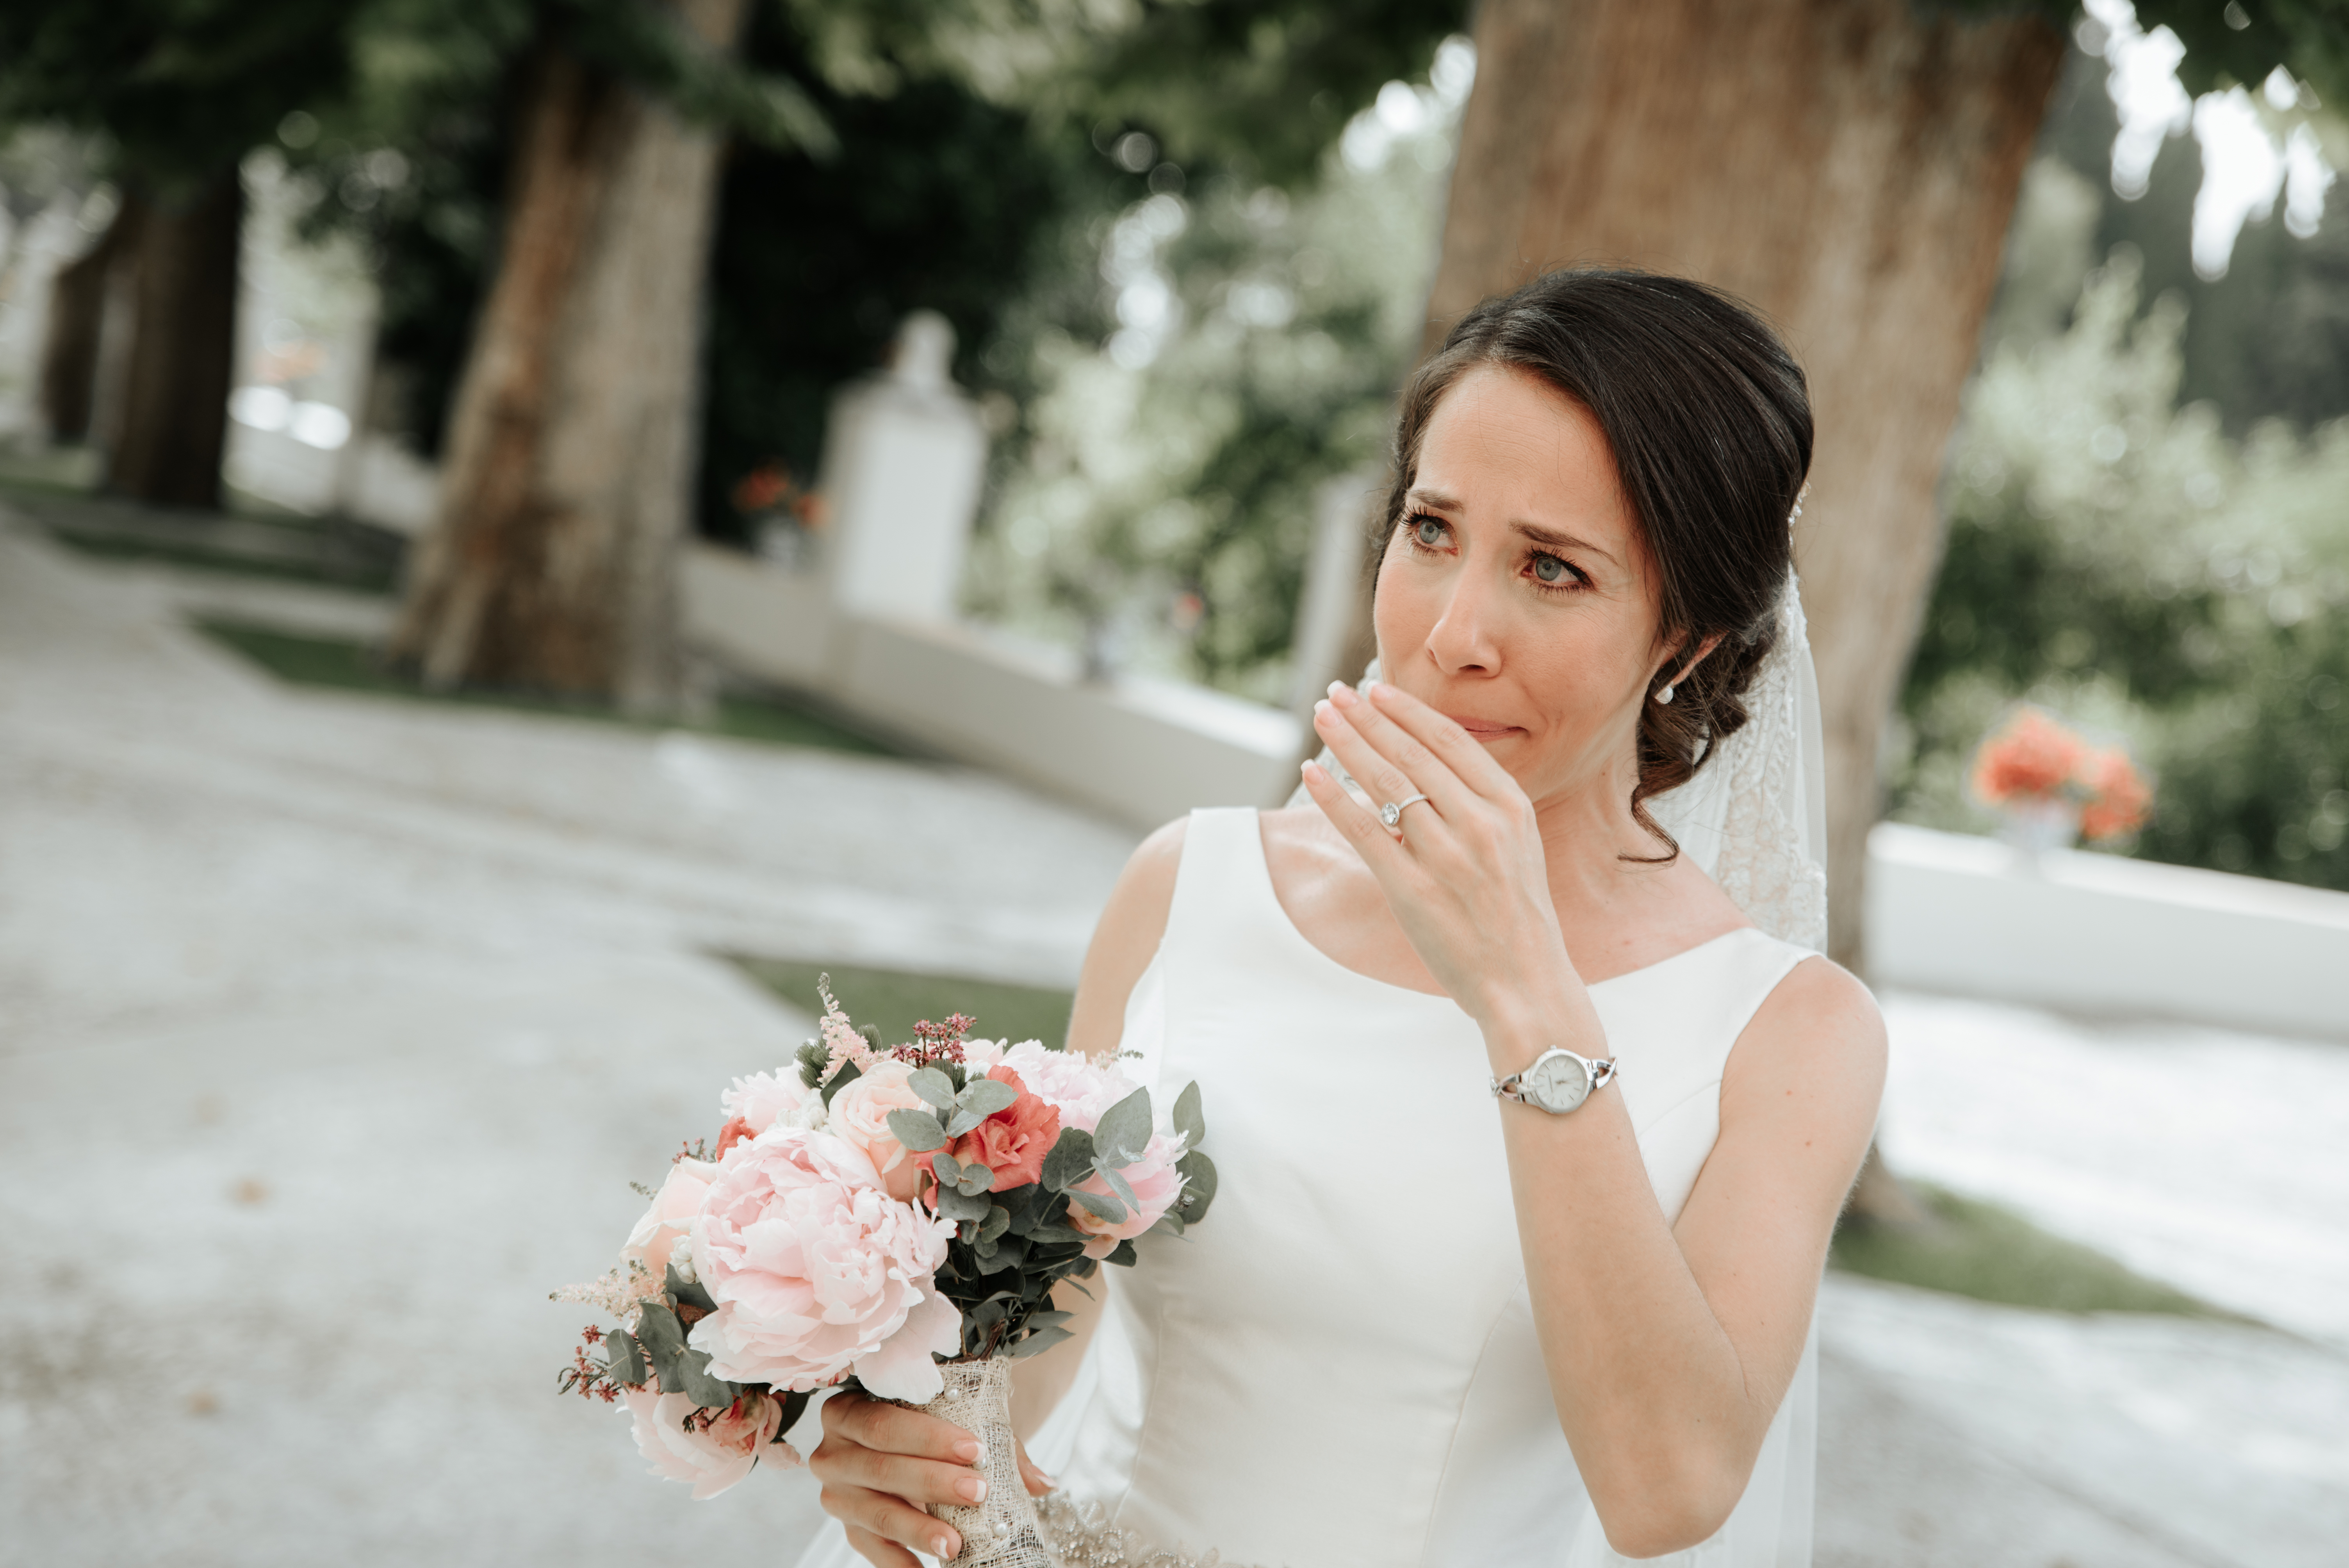 Eine weinende Braut, die einen Blumenstrauß hält | Quelle: Shutterstock